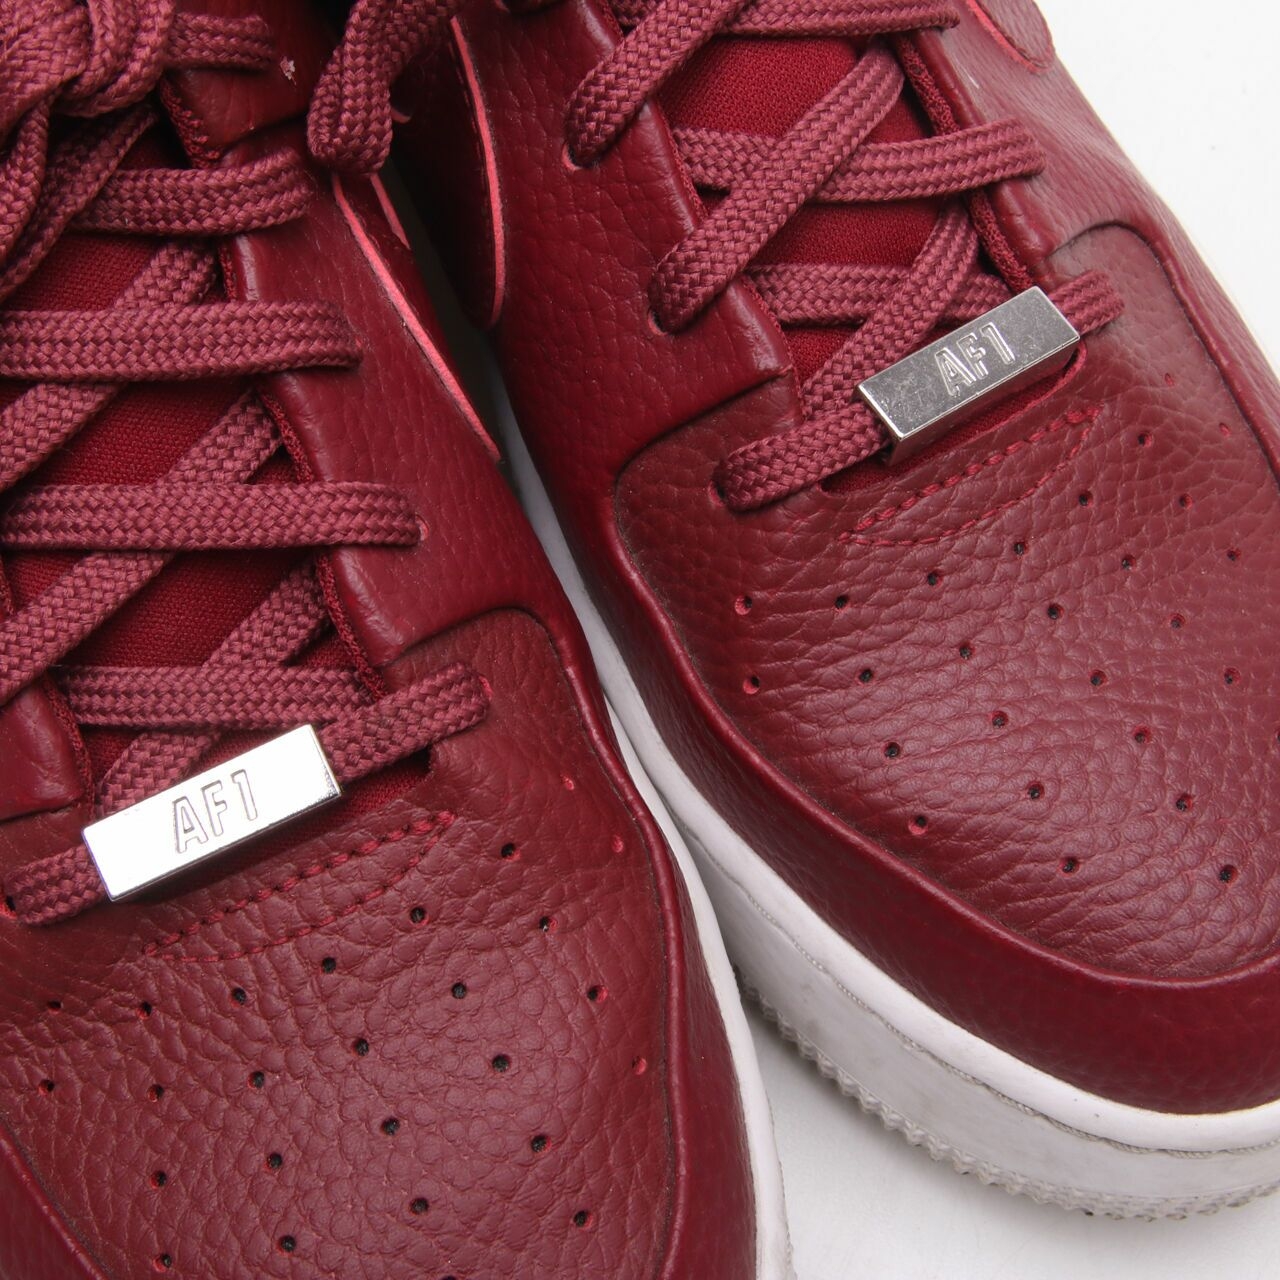 Nike Maroon Leather Sneakers